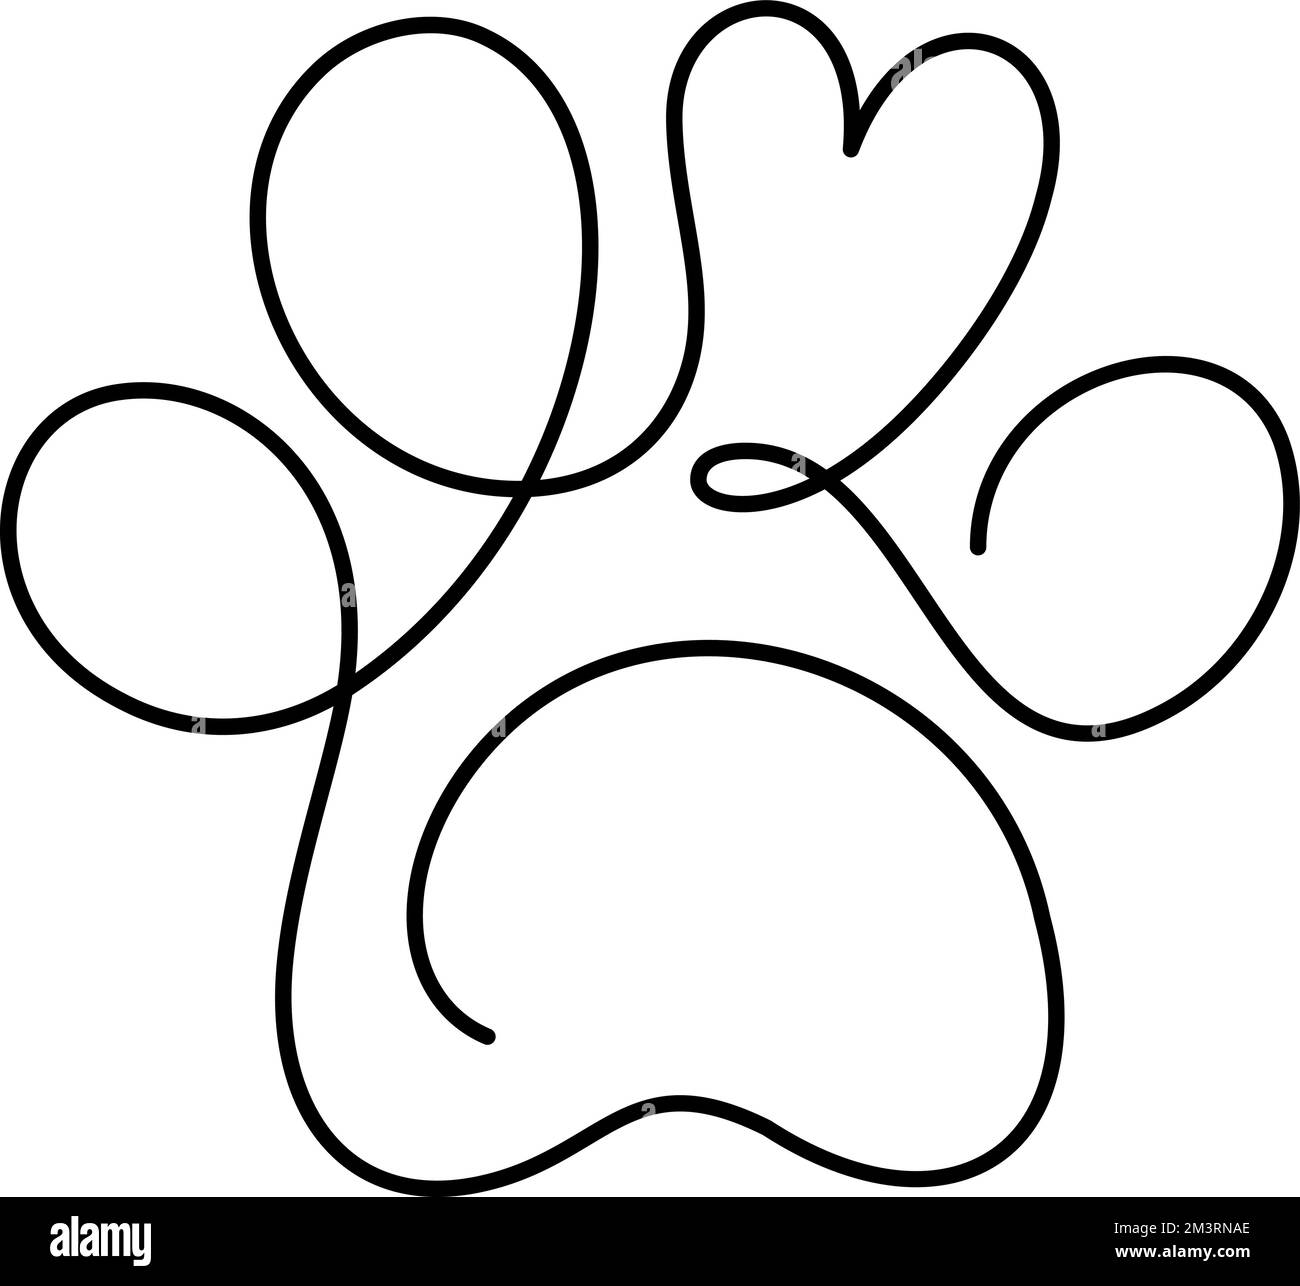 Fußabdruck von Hund- oder Katzenpfote und Herz in durchgehender einzeiliger Zeichnung des Logos. Minimale Strichgrafiken. Tier im Herzen. Haustiere lieben das Konzept Monoline Stock Vektor